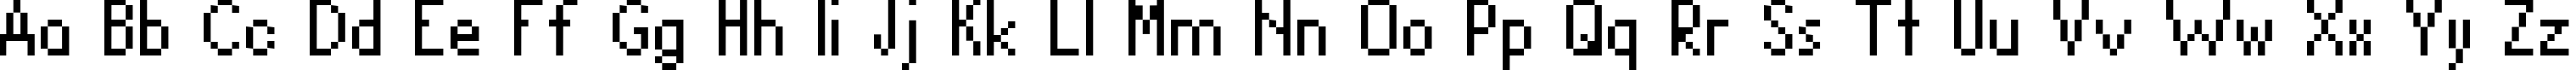 Пример написания английского алфавита шрифтом David Sans Condensed